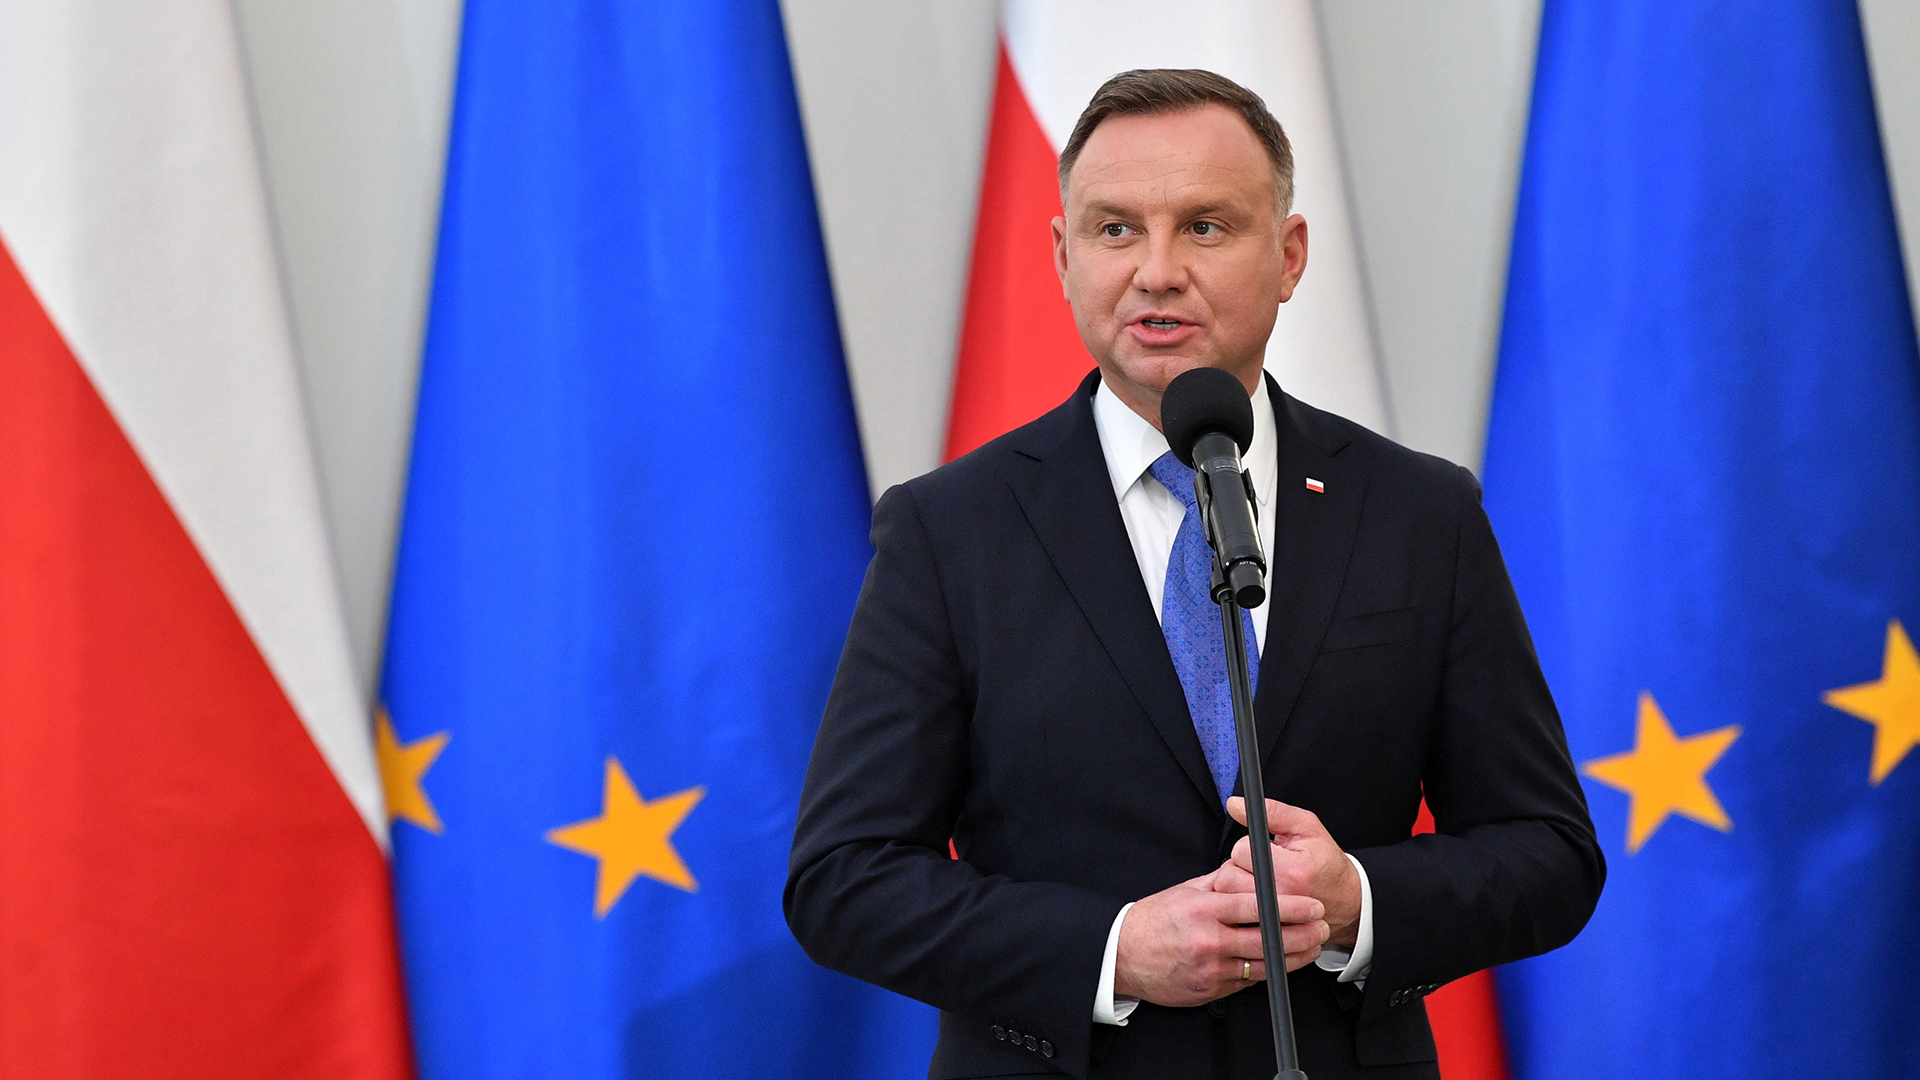 Zamrożone fundusze unijne: Polska liczy na wcześniejsze uwolnienie